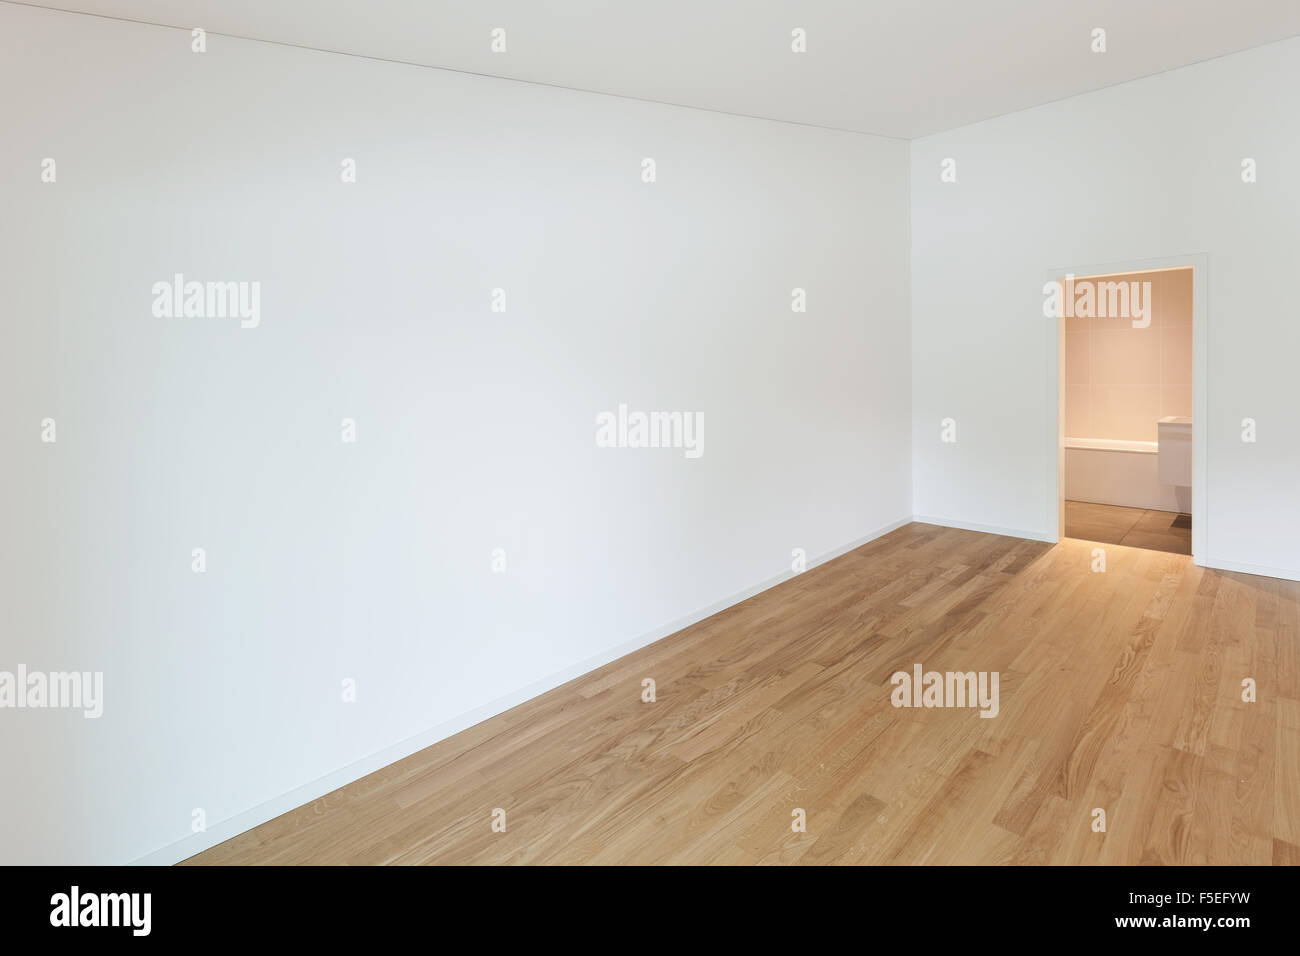 Intérieur de l'appartement neuf, salle vide avec plancher en bois Banque D'Images